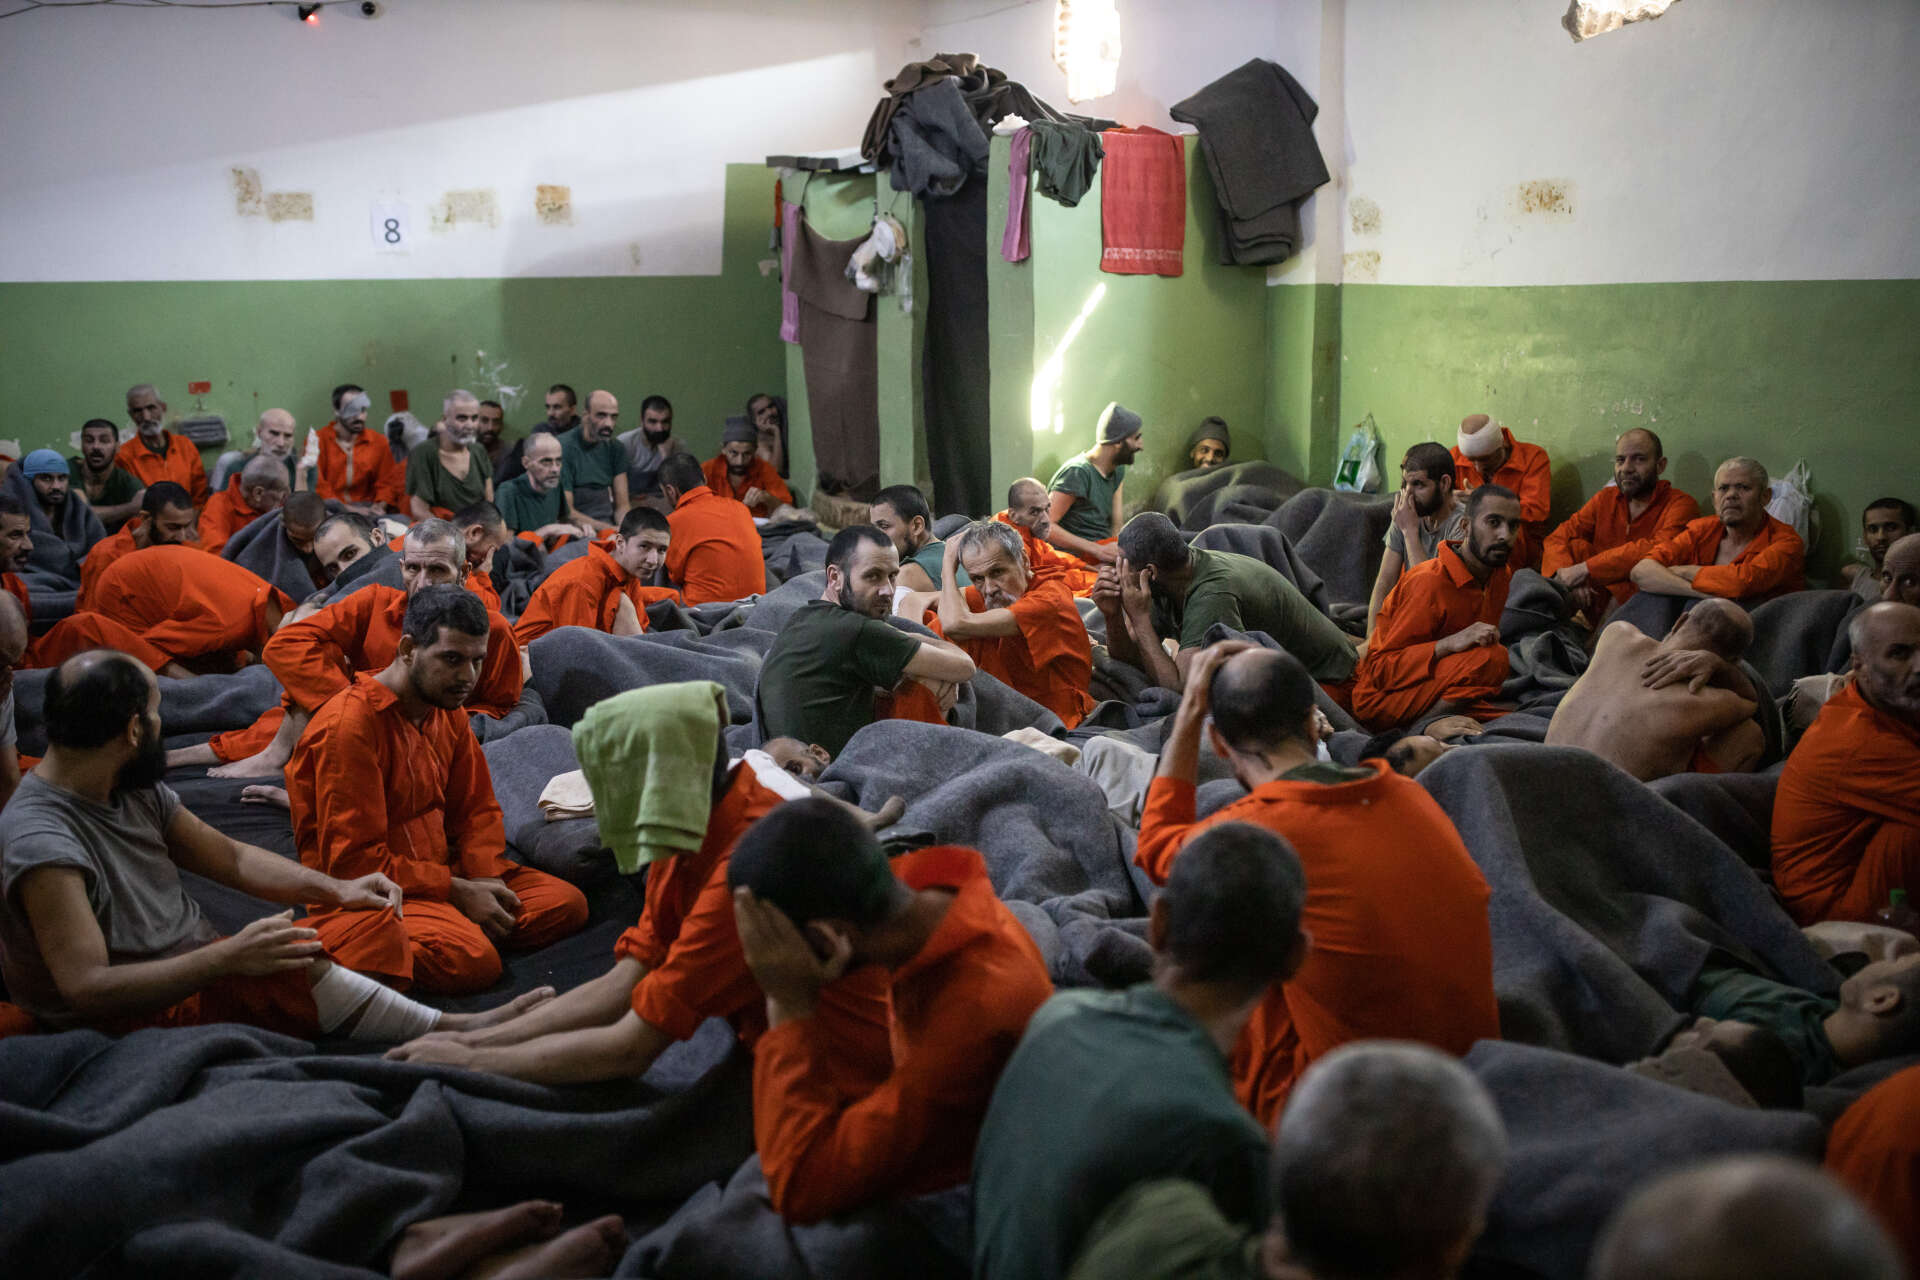 Cette pièce de la taille d'une grande salle de classe accueille de nombreux prisonniers. Le 30 octobre 2019, Nord Est de la Syrie.